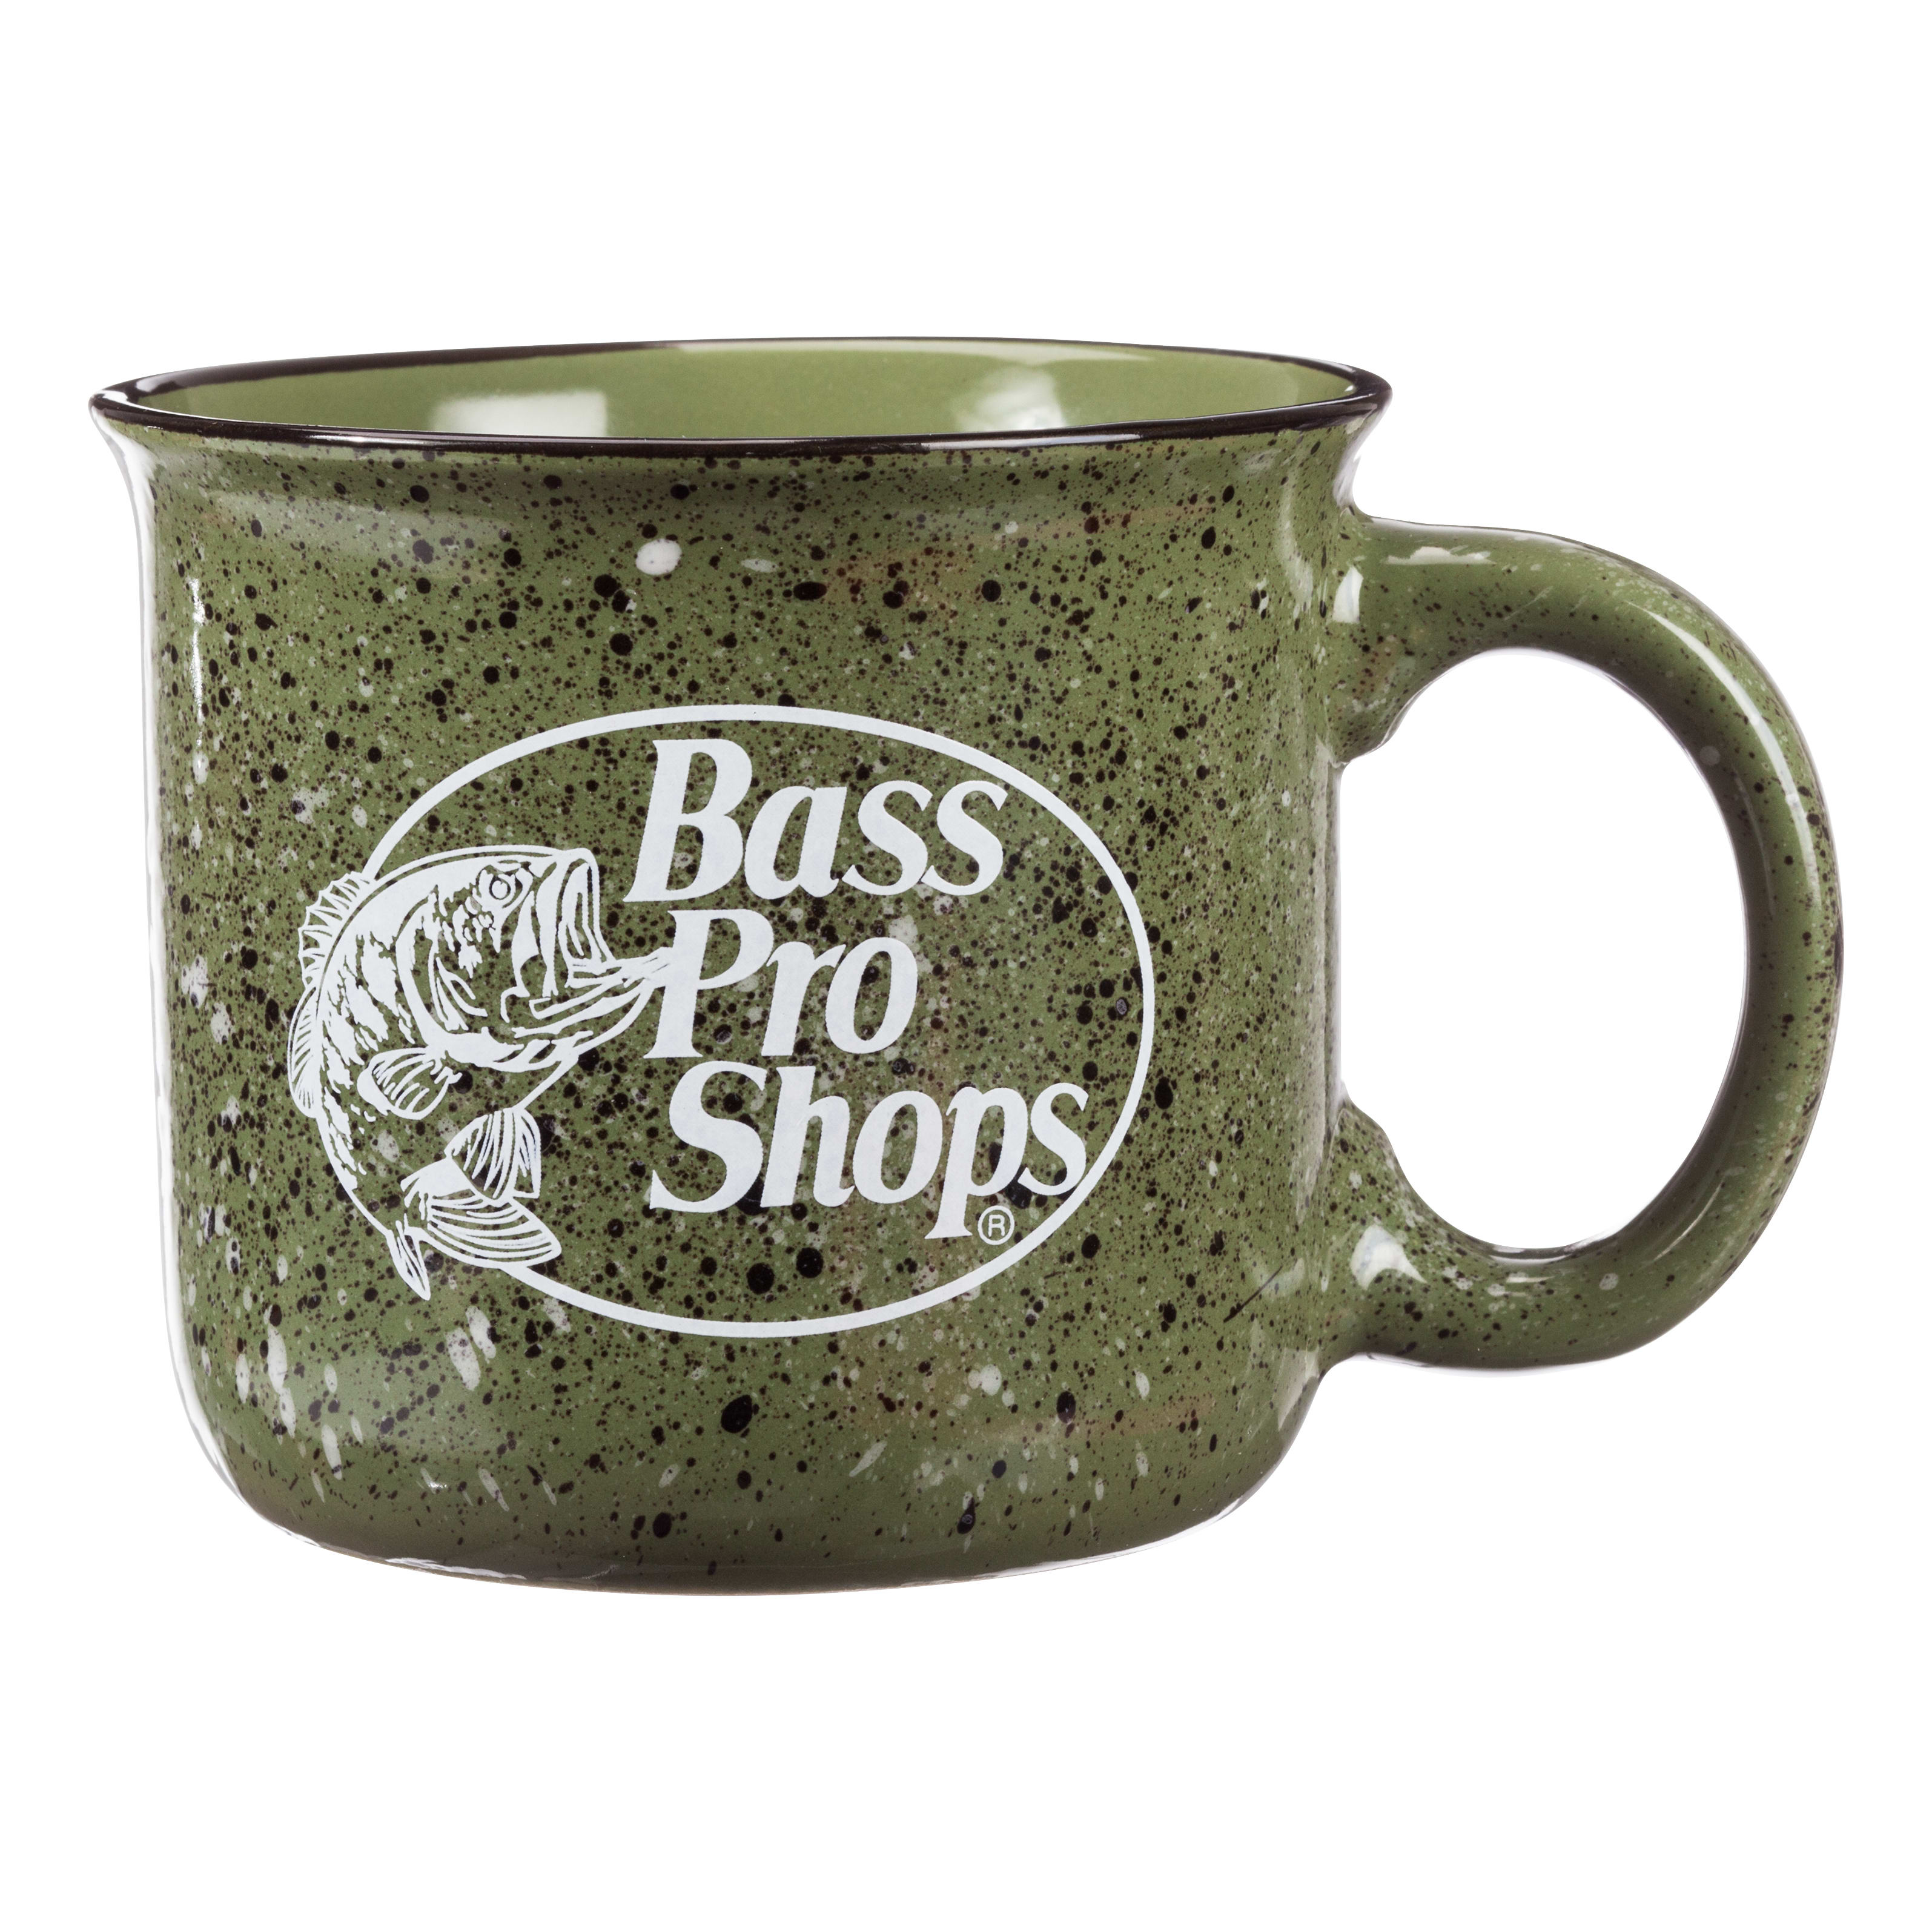 Bass Pro Shops Camp Mug - Moss Green